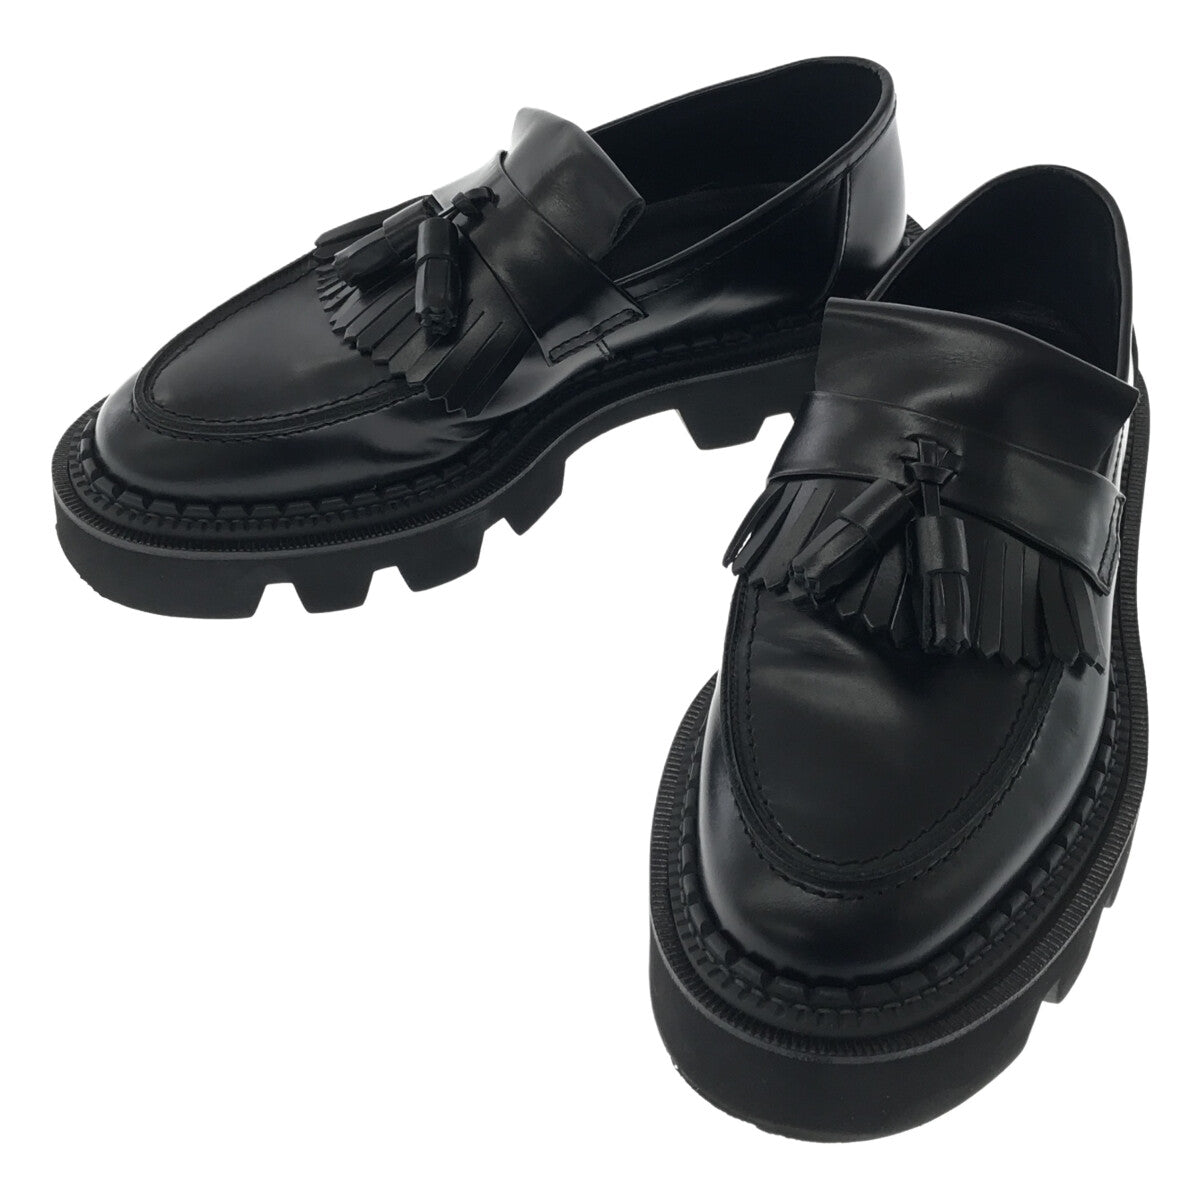 期間限定特価完売品タンクソールタッセルローファー MAISON SPECIAL ブラック 靴